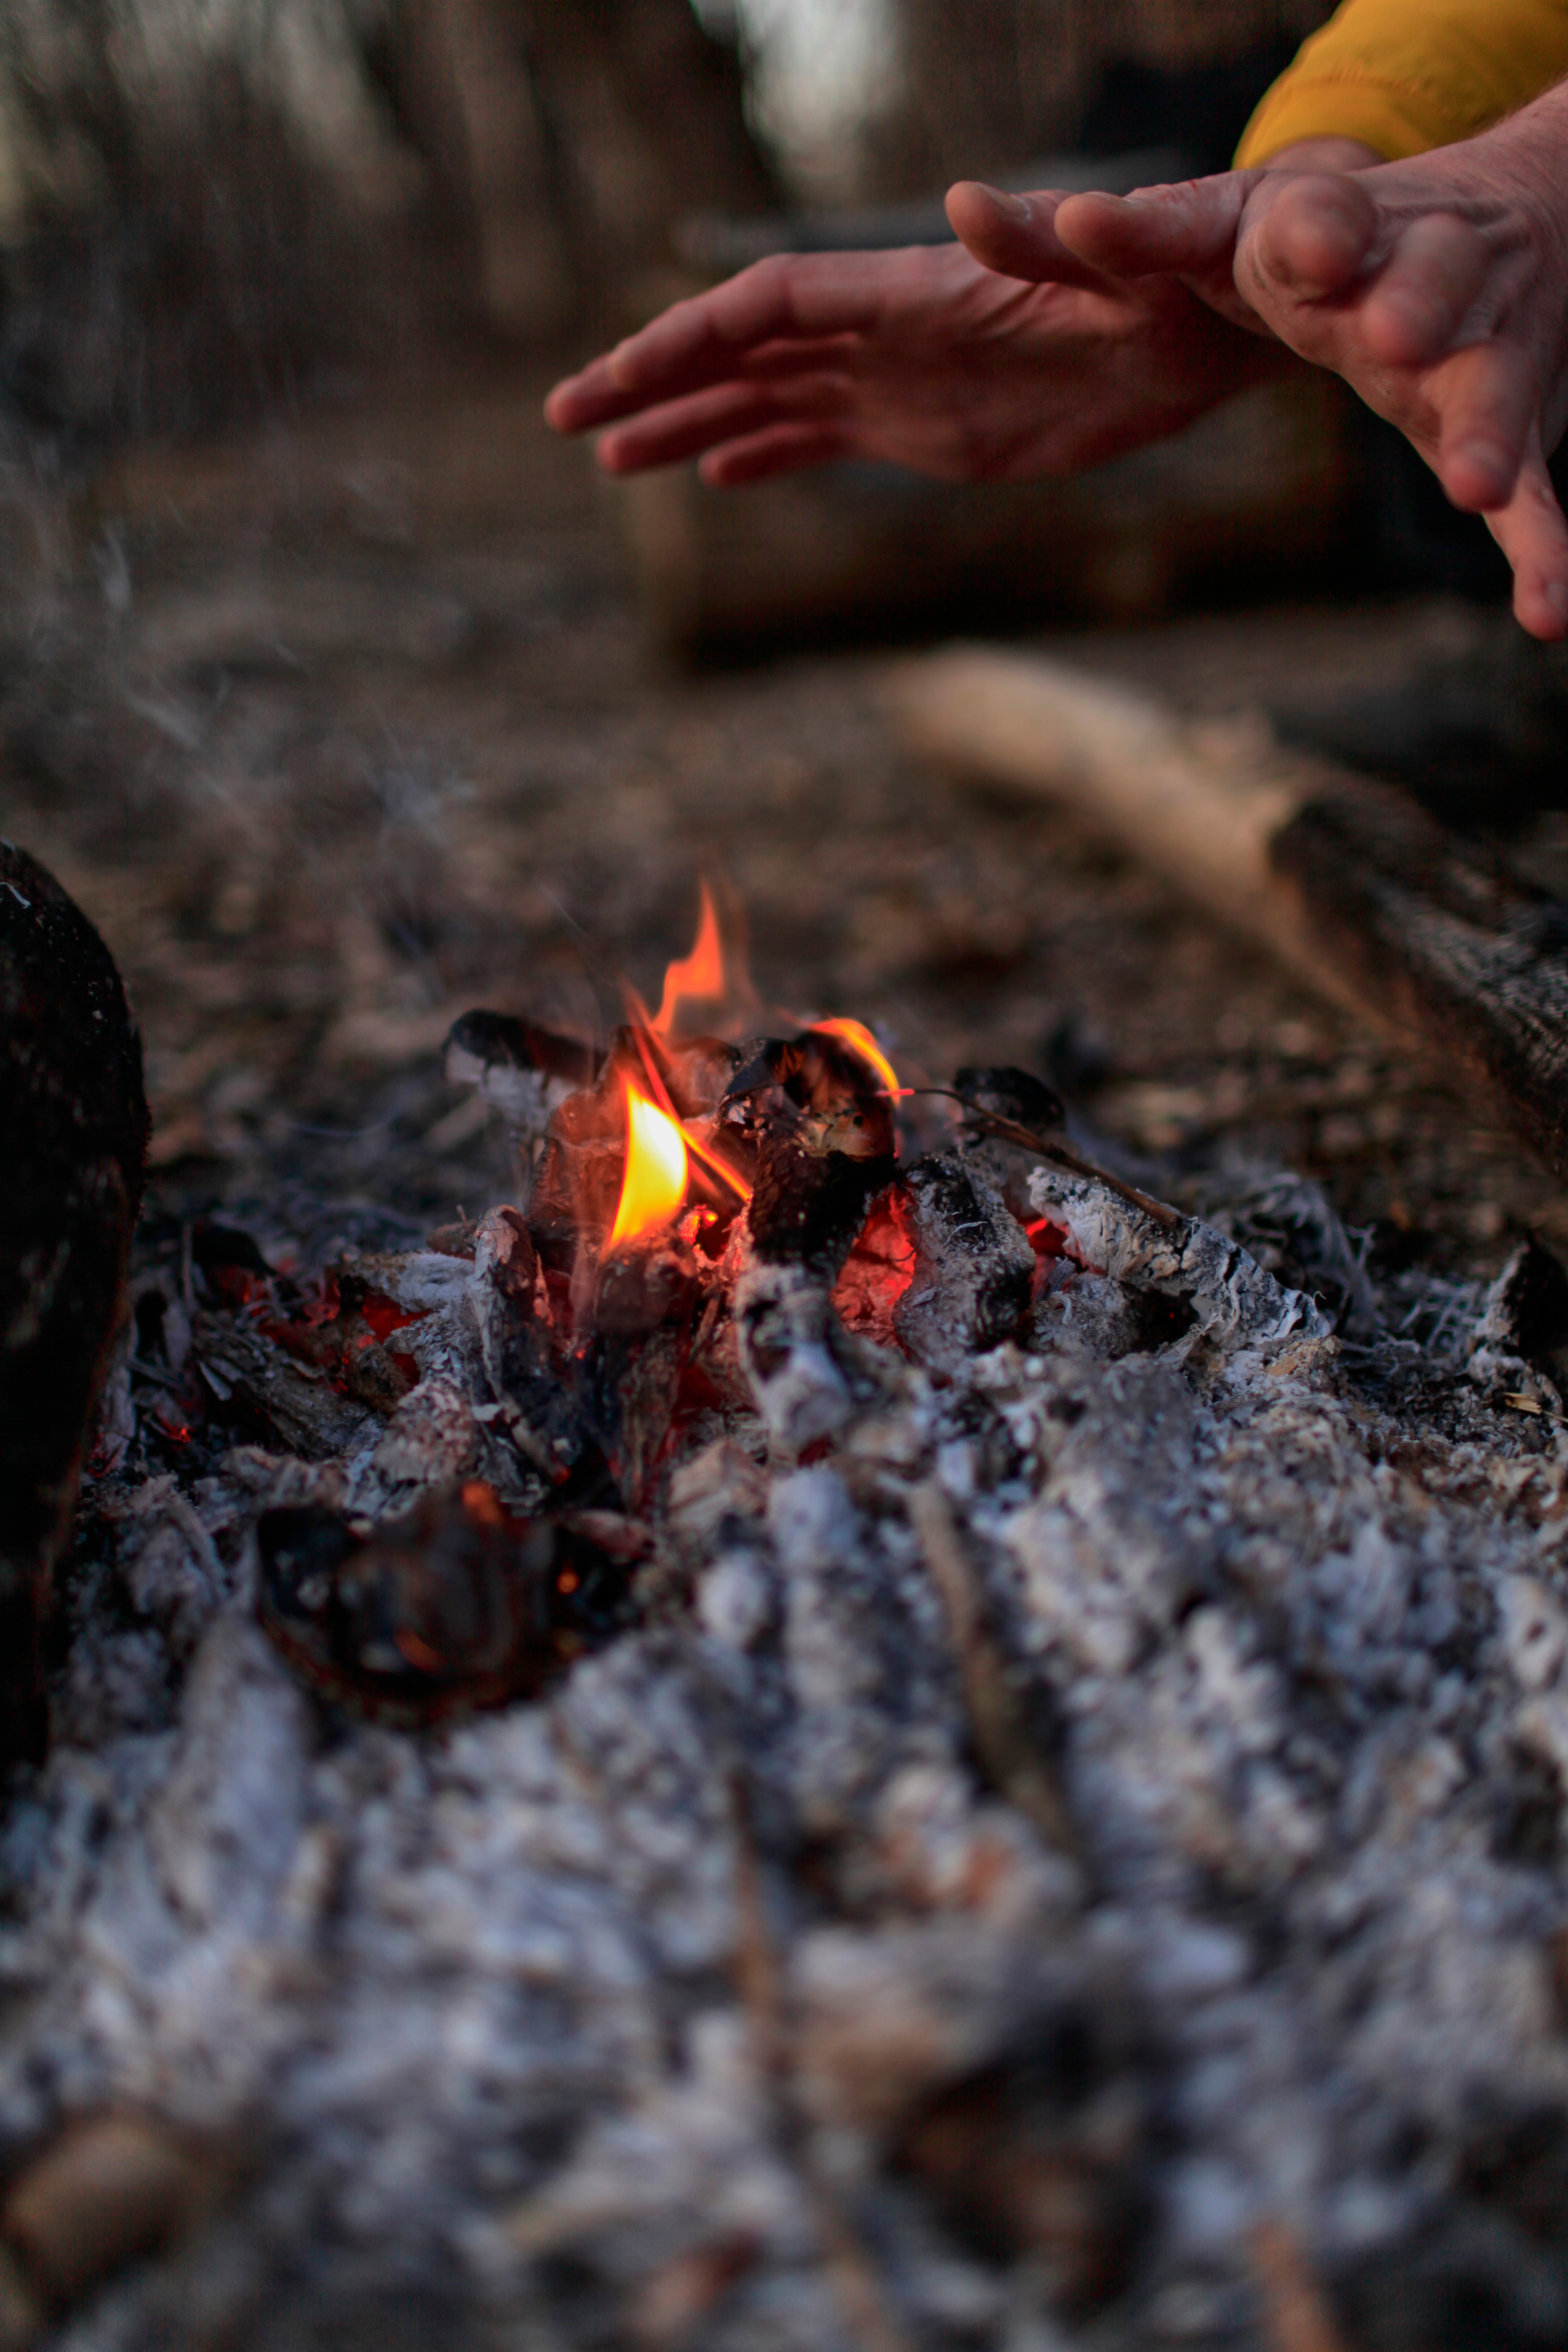 Hands near the fire | Source: Shutterstock.com